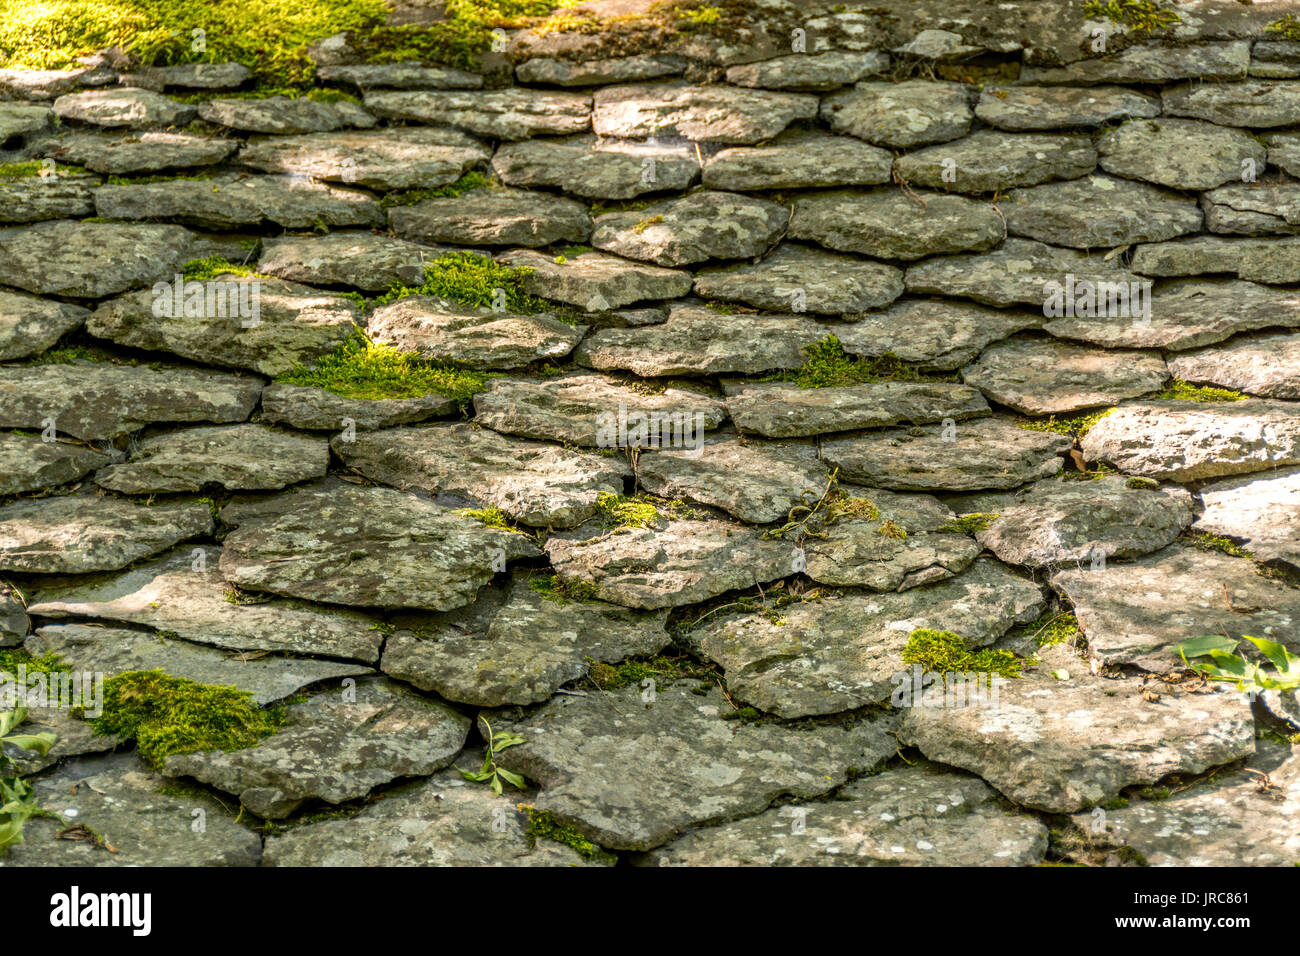 Gros plan d'un sol en pierre avec des pierres de forme égale, Puy de Dome, Auvergne, France Banque D'Images